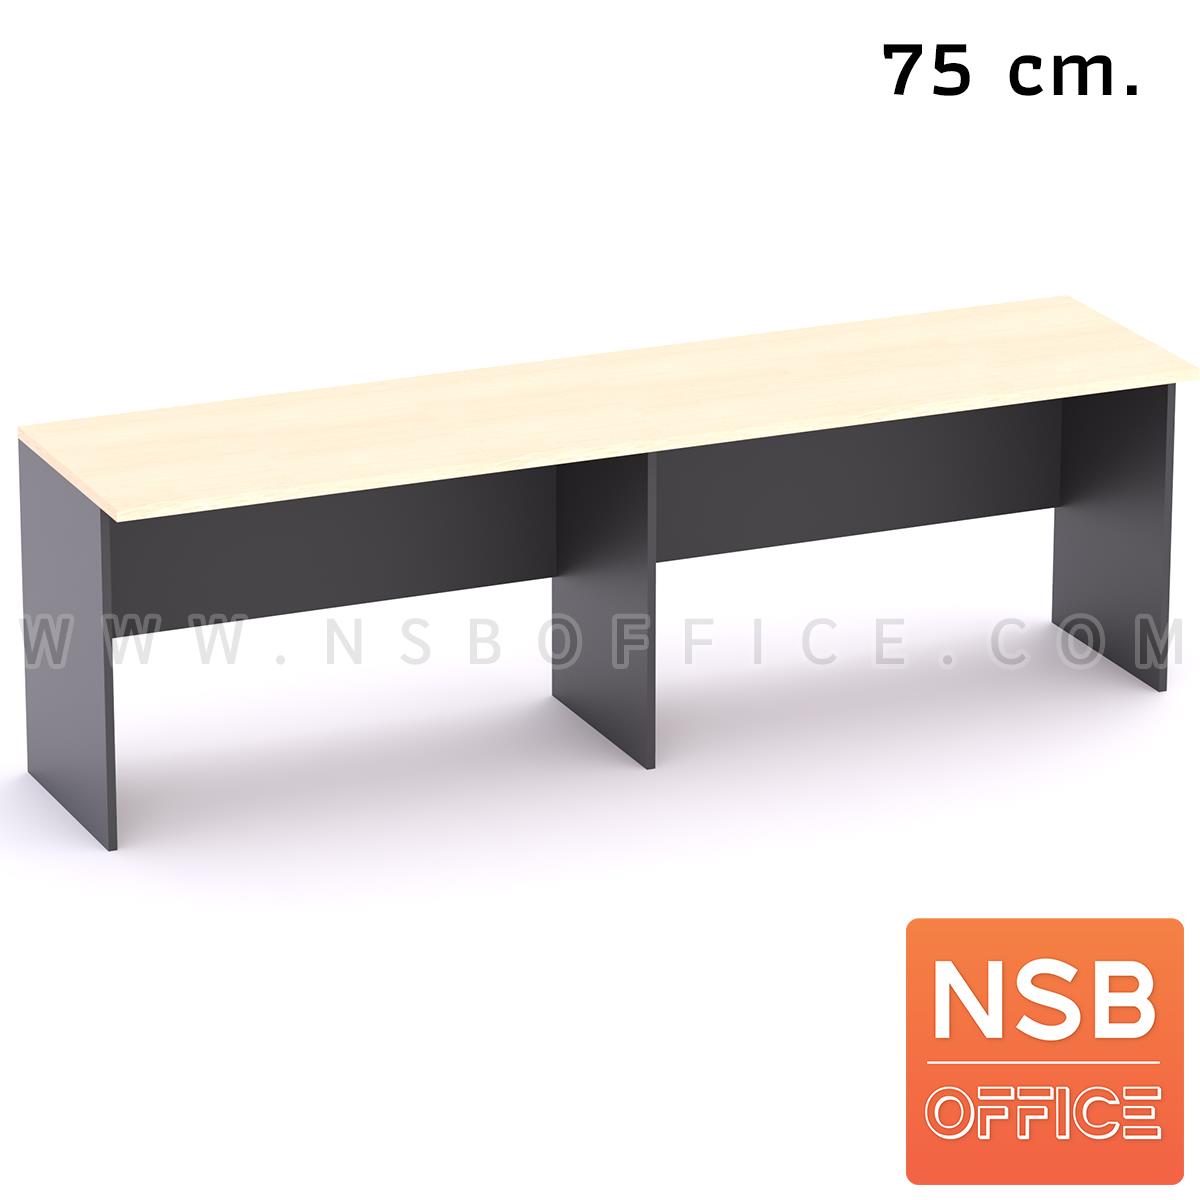 A05A145:โต๊ะประชุม 3 ที่นั่ง  ขนาด 240W*75D cm.   Top ยื่น 10 cm. เมลามีน